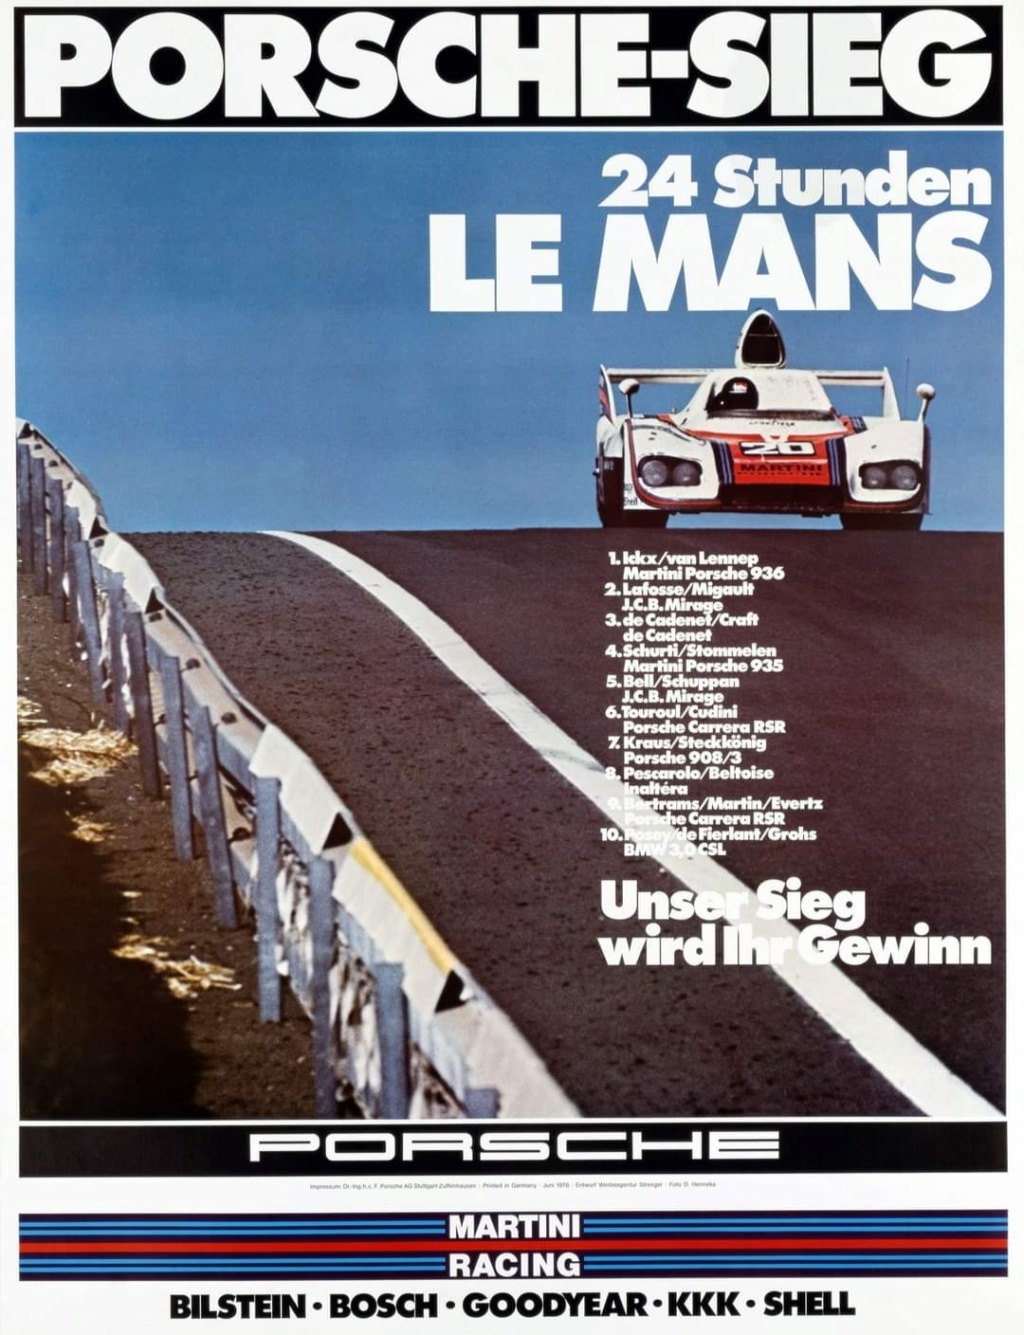 Affiches Porsche dans la course Automobile Img_2060